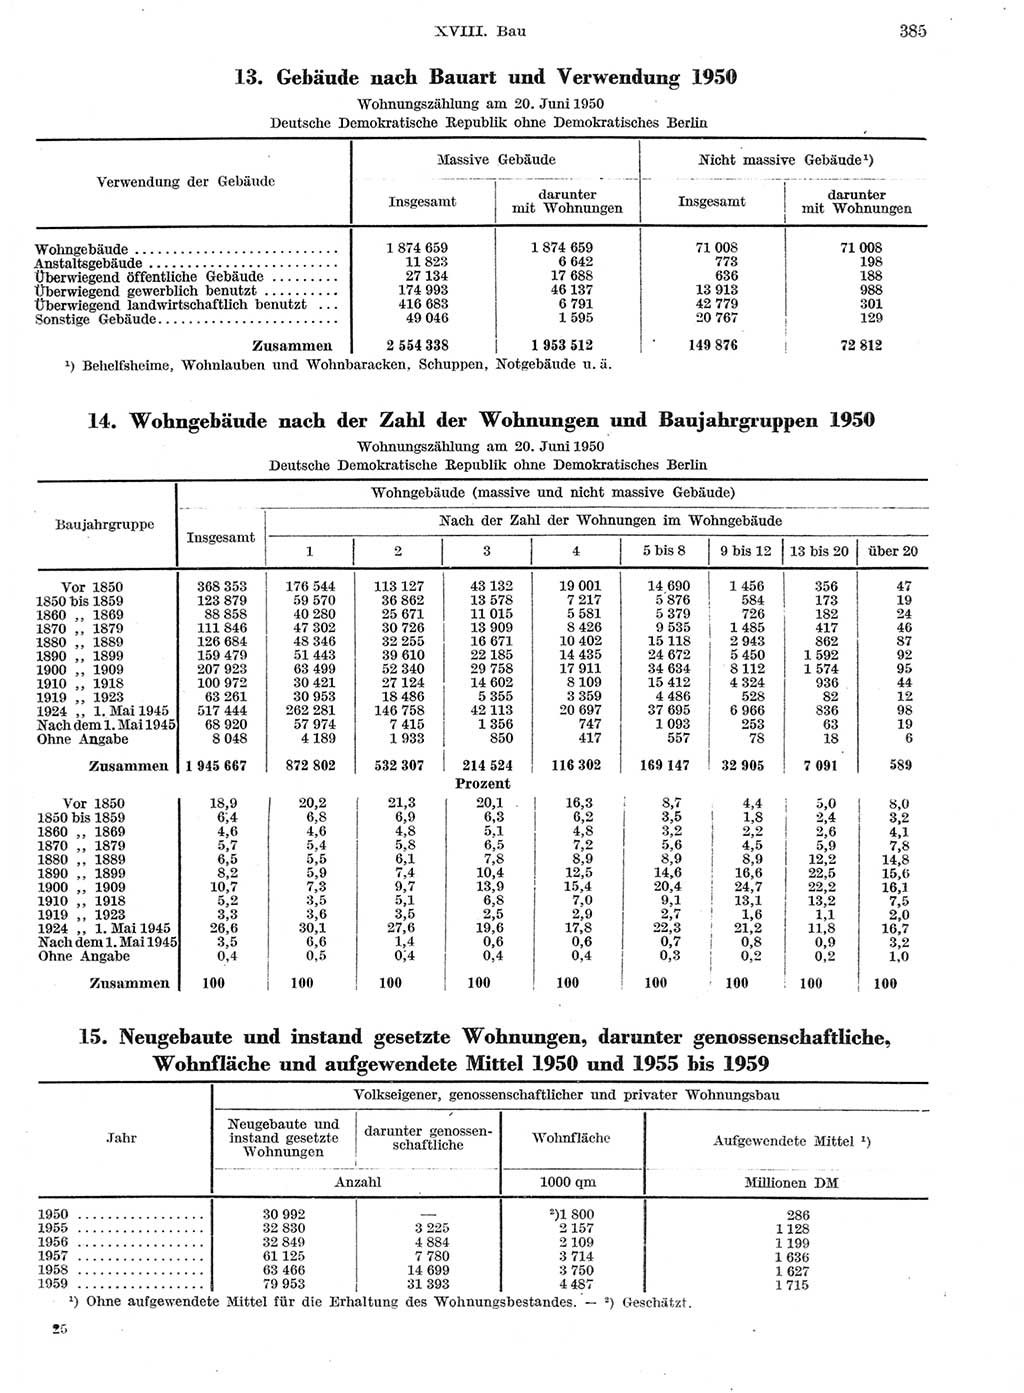 Statistisches Jahrbuch der Deutschen Demokratischen Republik (DDR) 1959, Seite 385 (Stat. Jb. DDR 1959, S. 385)